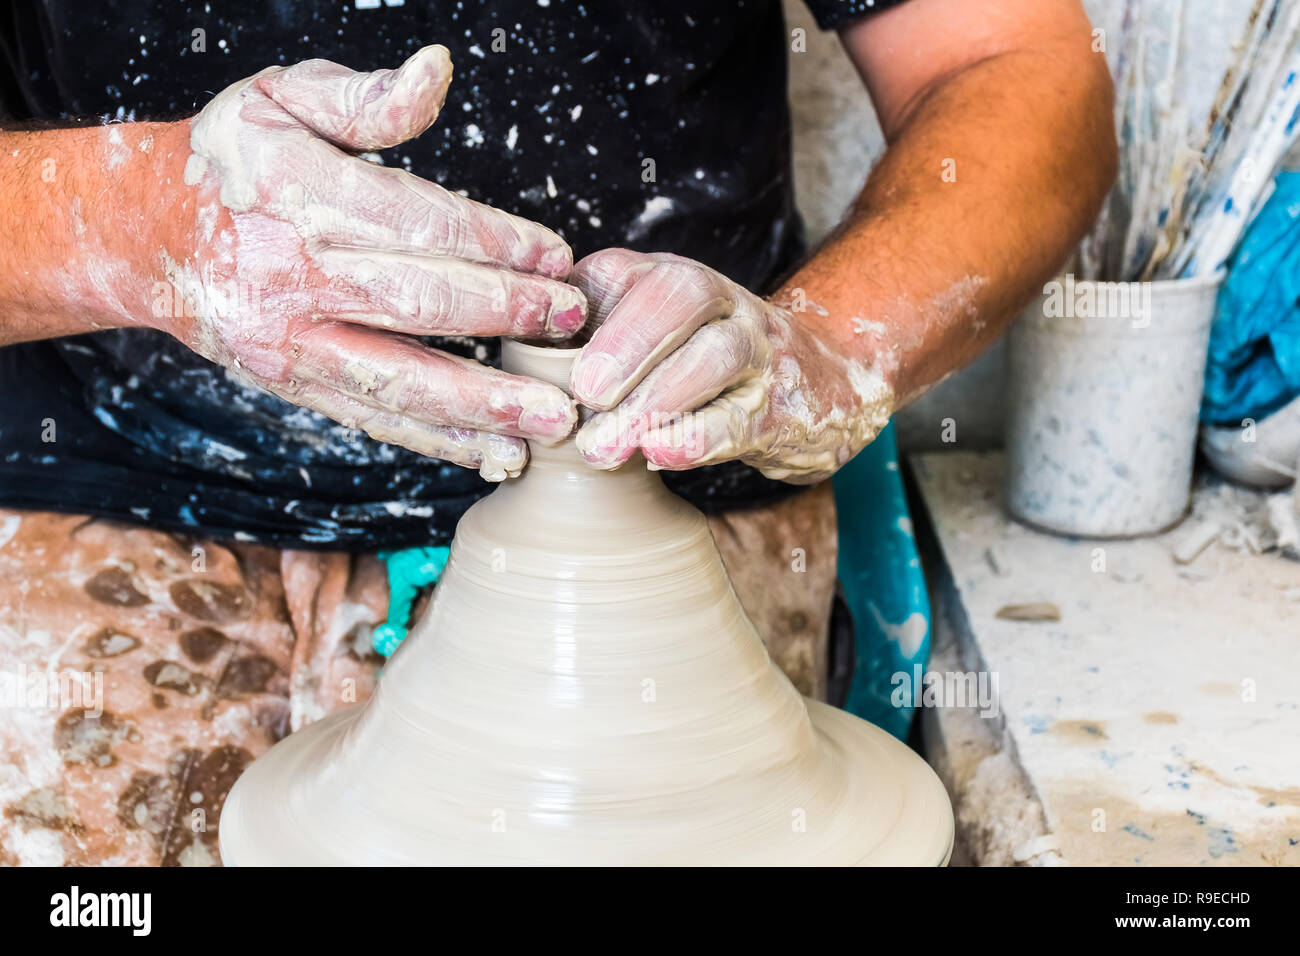 Un marocchino ceramista crea ceramiche in un workshop nella vecchia medina di Fez, Marocco, Africa Foto Stock